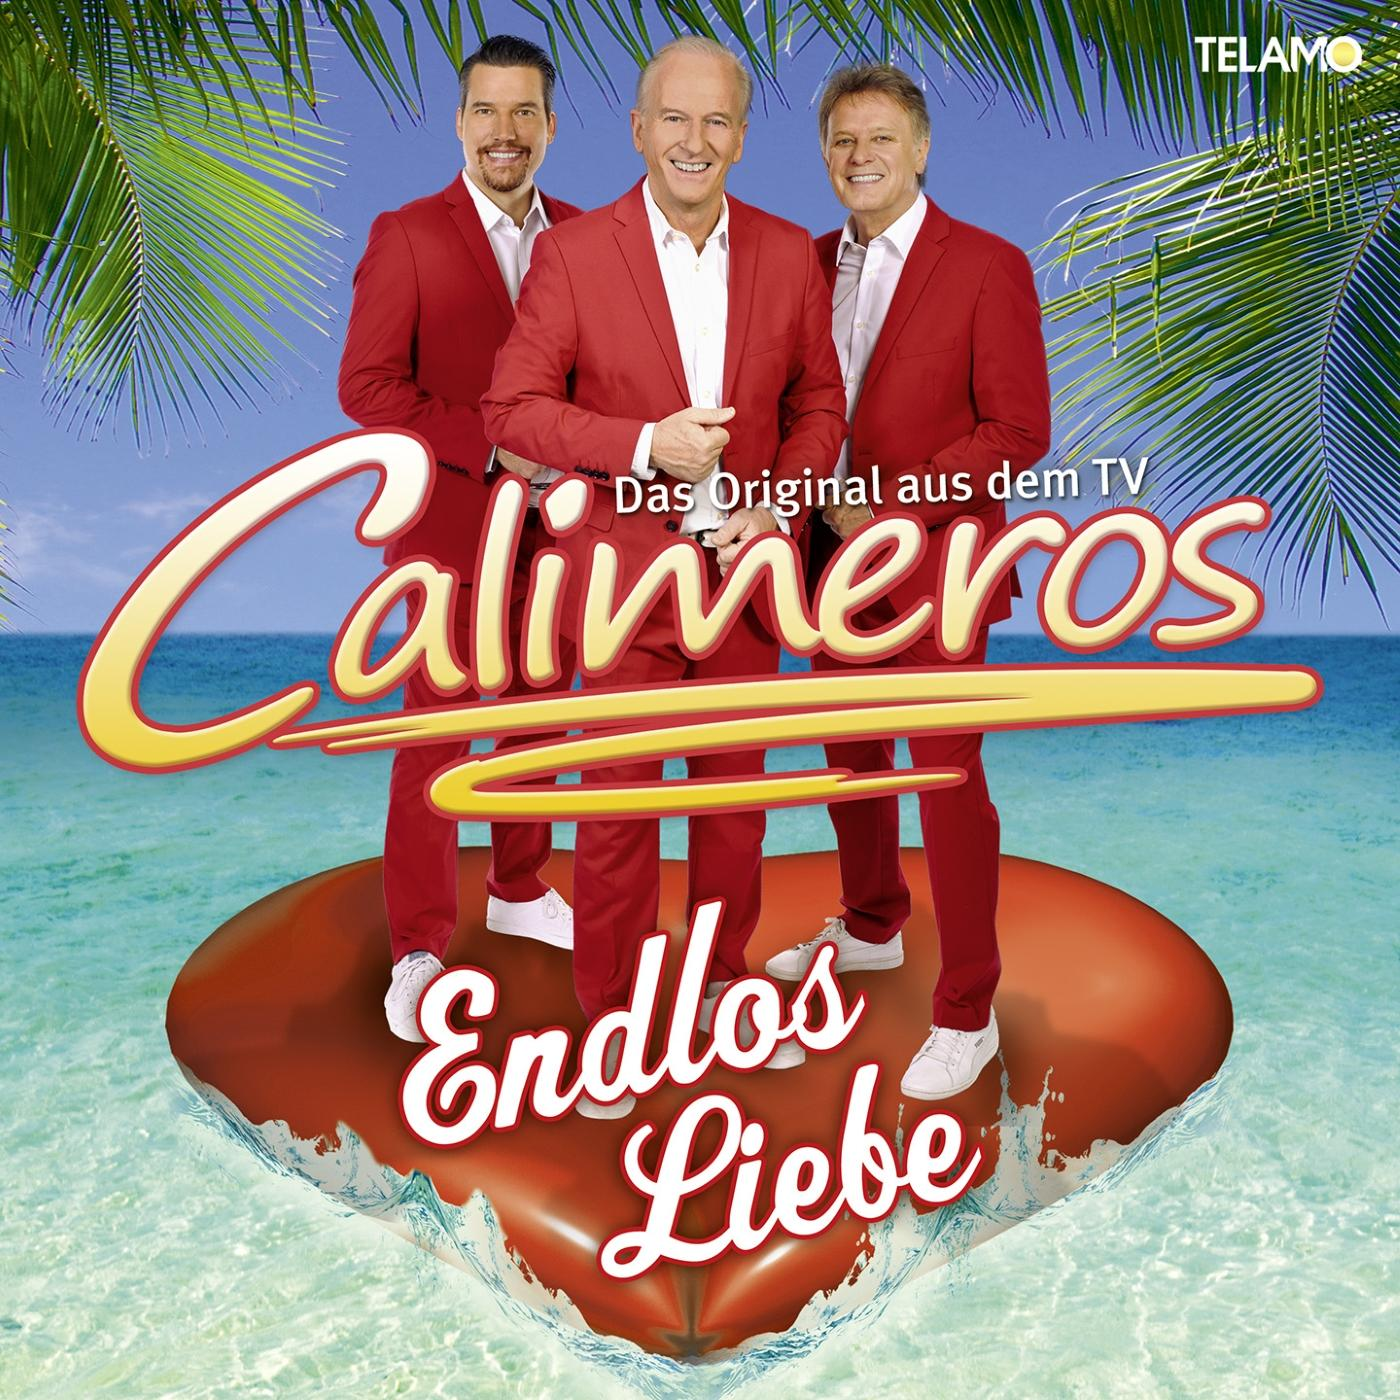 Calimeros - (CD) Endlos Liebe -